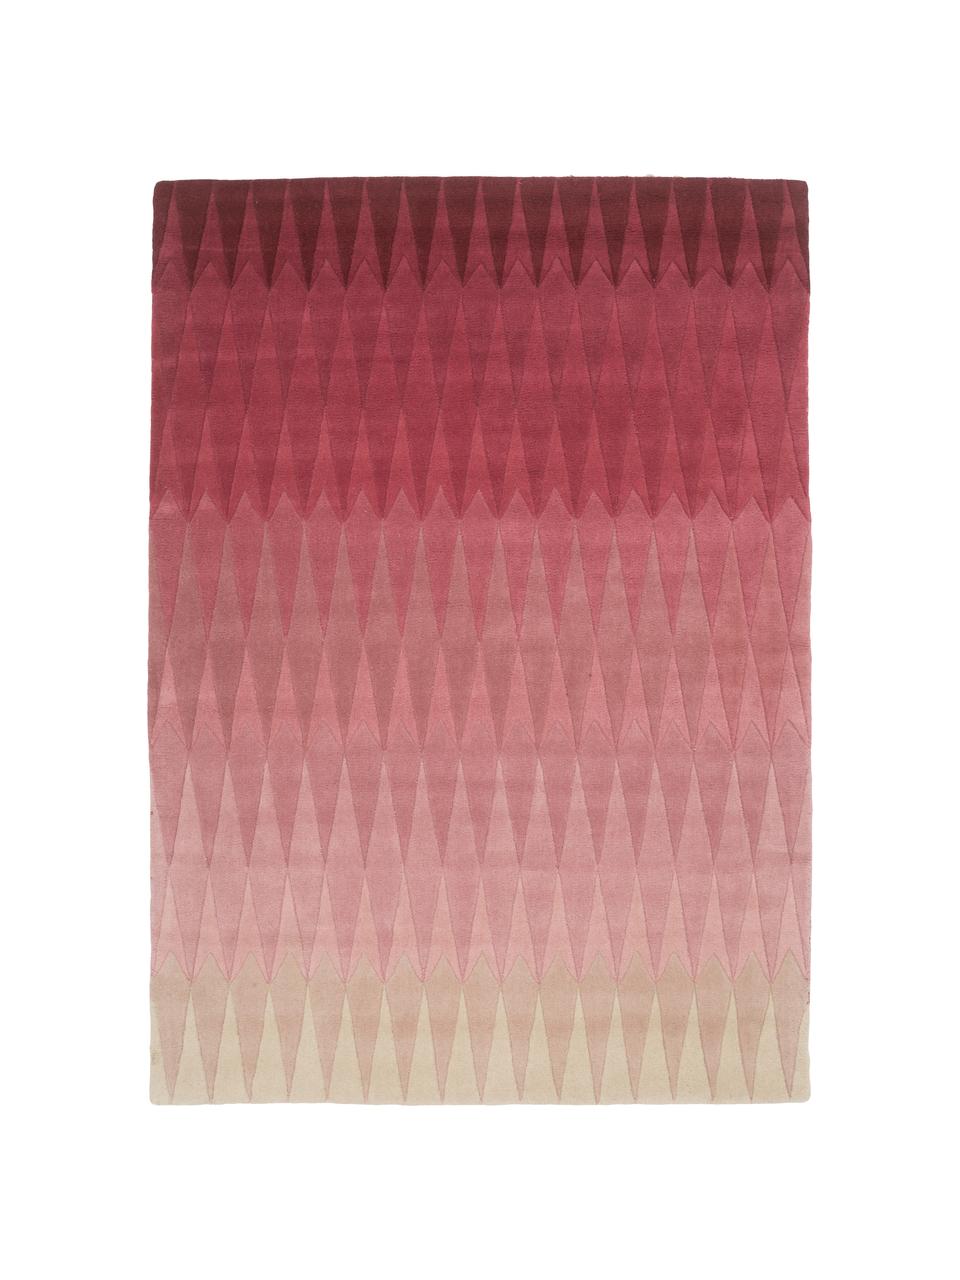 Handgetufteter Designteppich Acacia mit Farbverlauf in Pink, Pink, B 170 x L 240 cm (Grösse M)